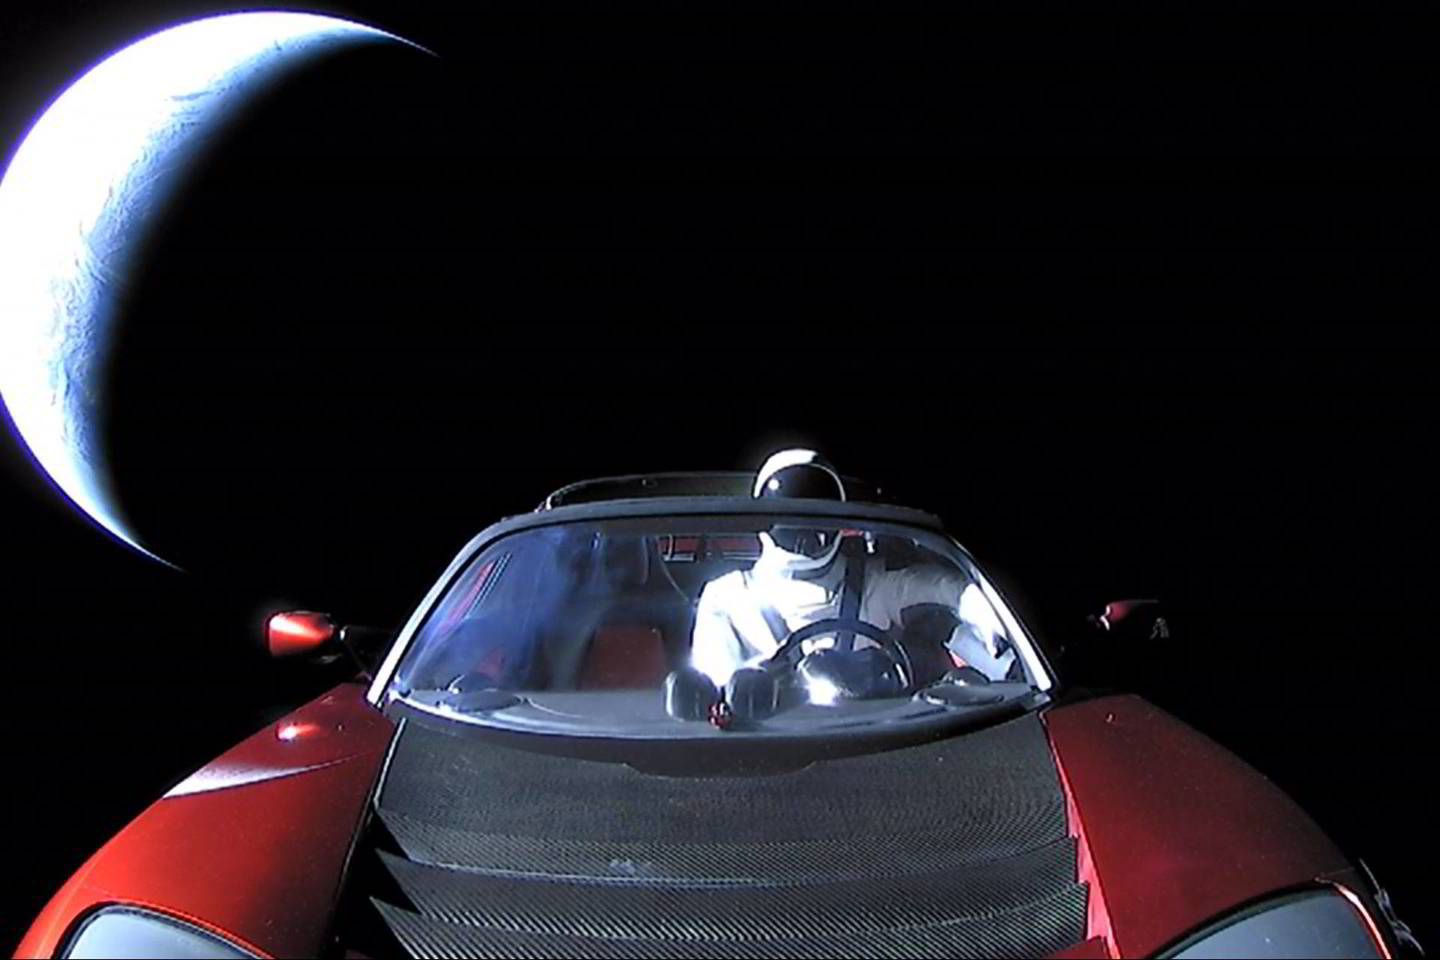  Skafandru aprengtas manekenas, pasirodo, skirtas skafandro bandymams.<br> SpaceX nuotr.